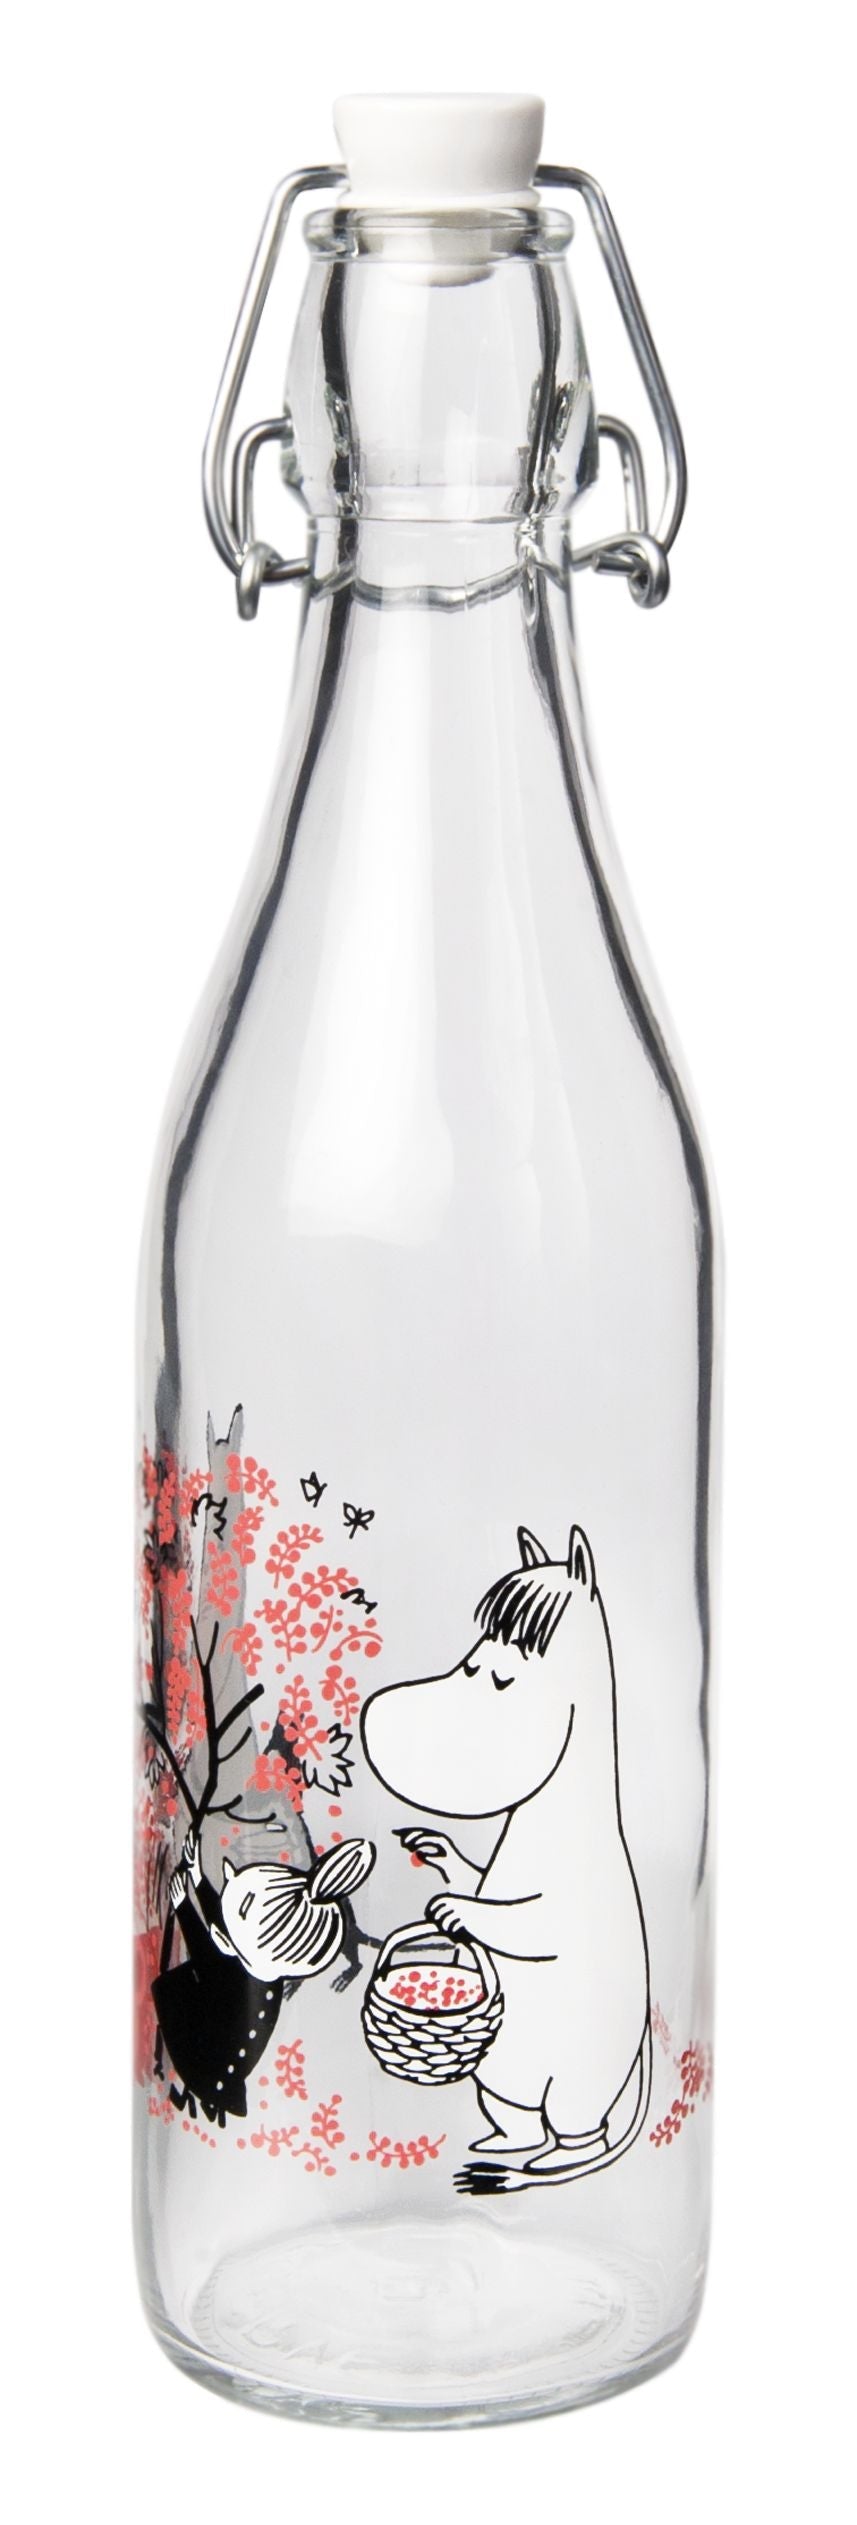 Muurla Moomin glazen fles, bessen